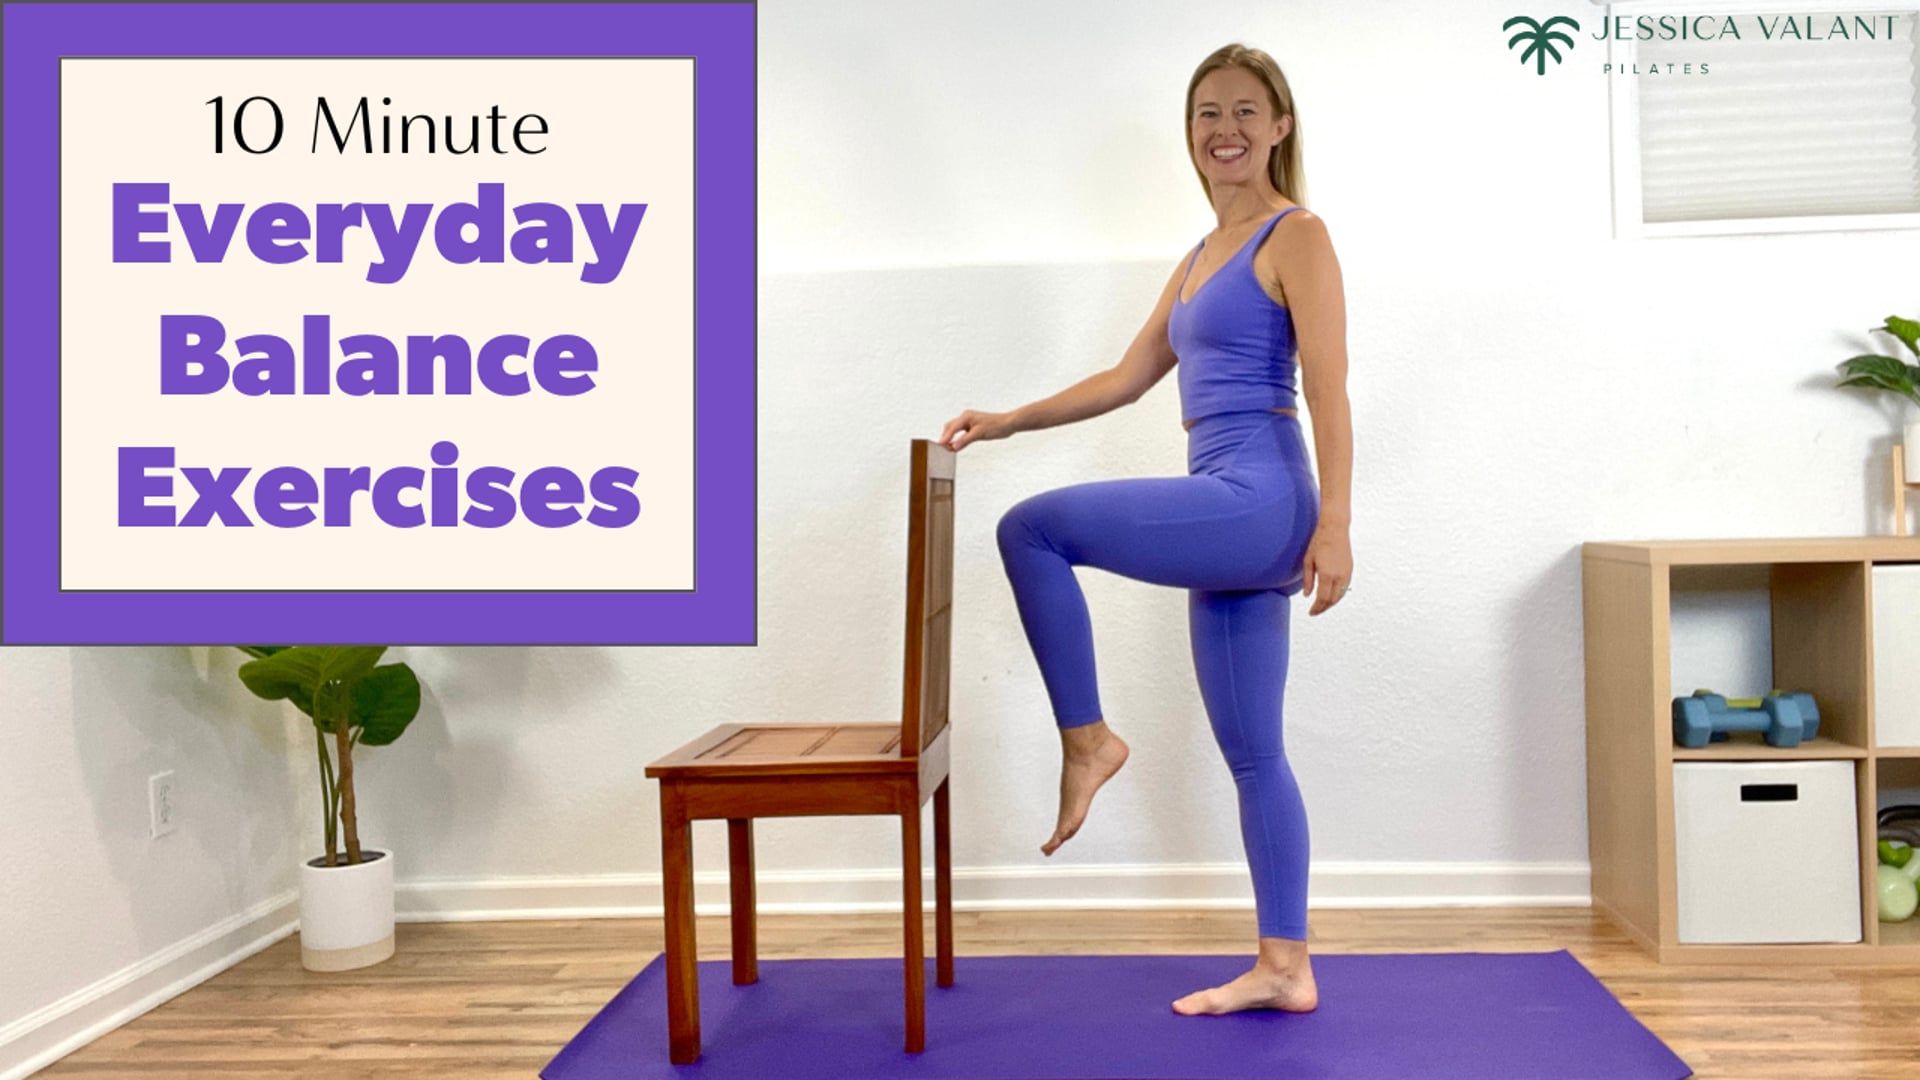 10 Minute Everyday Balance Exercises - Jessica Valant Pilates